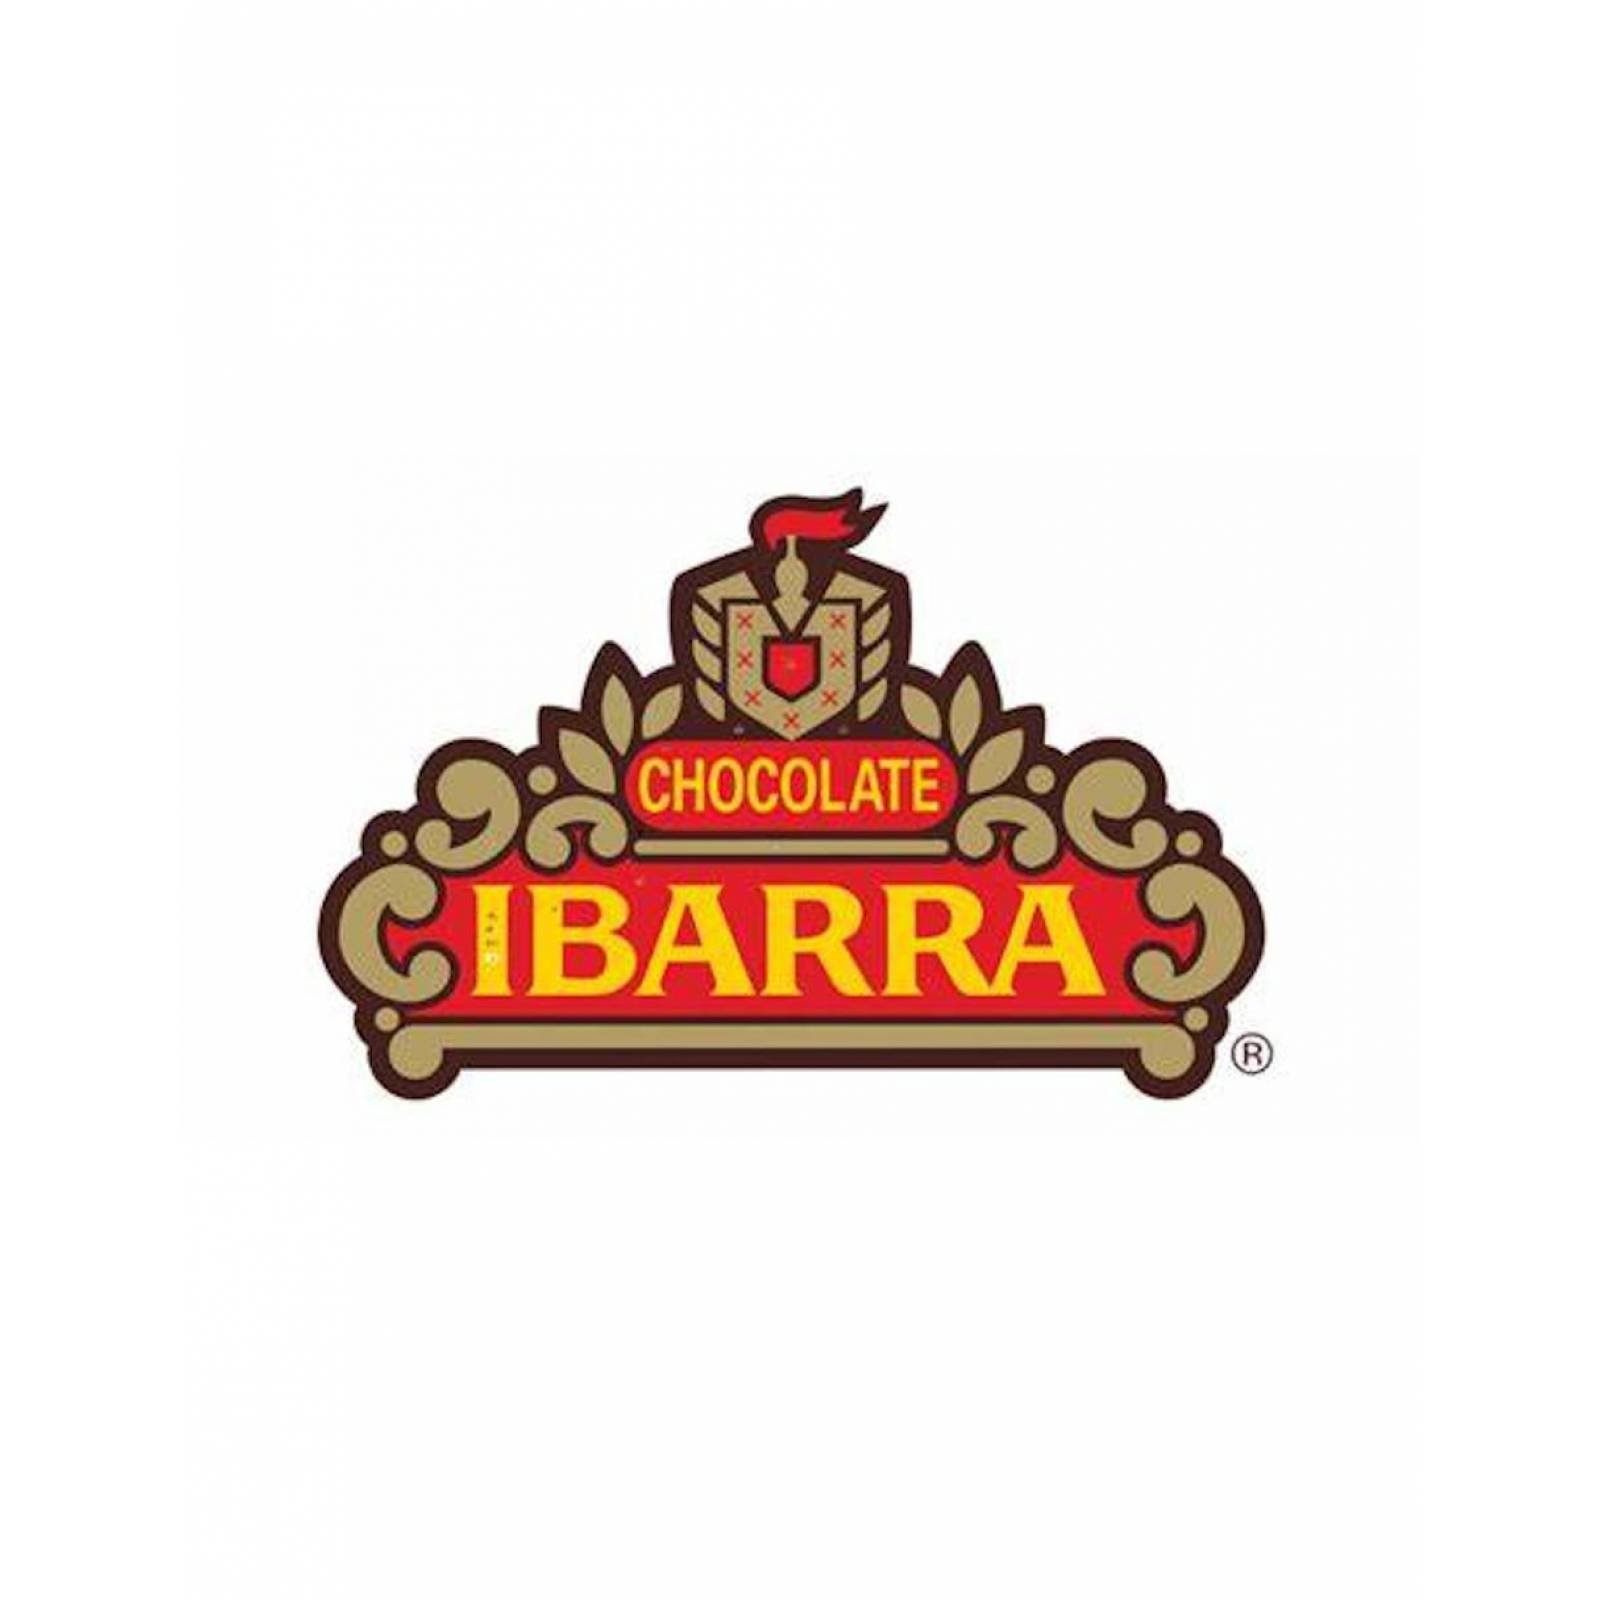 Pack de 24 Chocolate en polvo Ibarra Chocochoco de 167g 